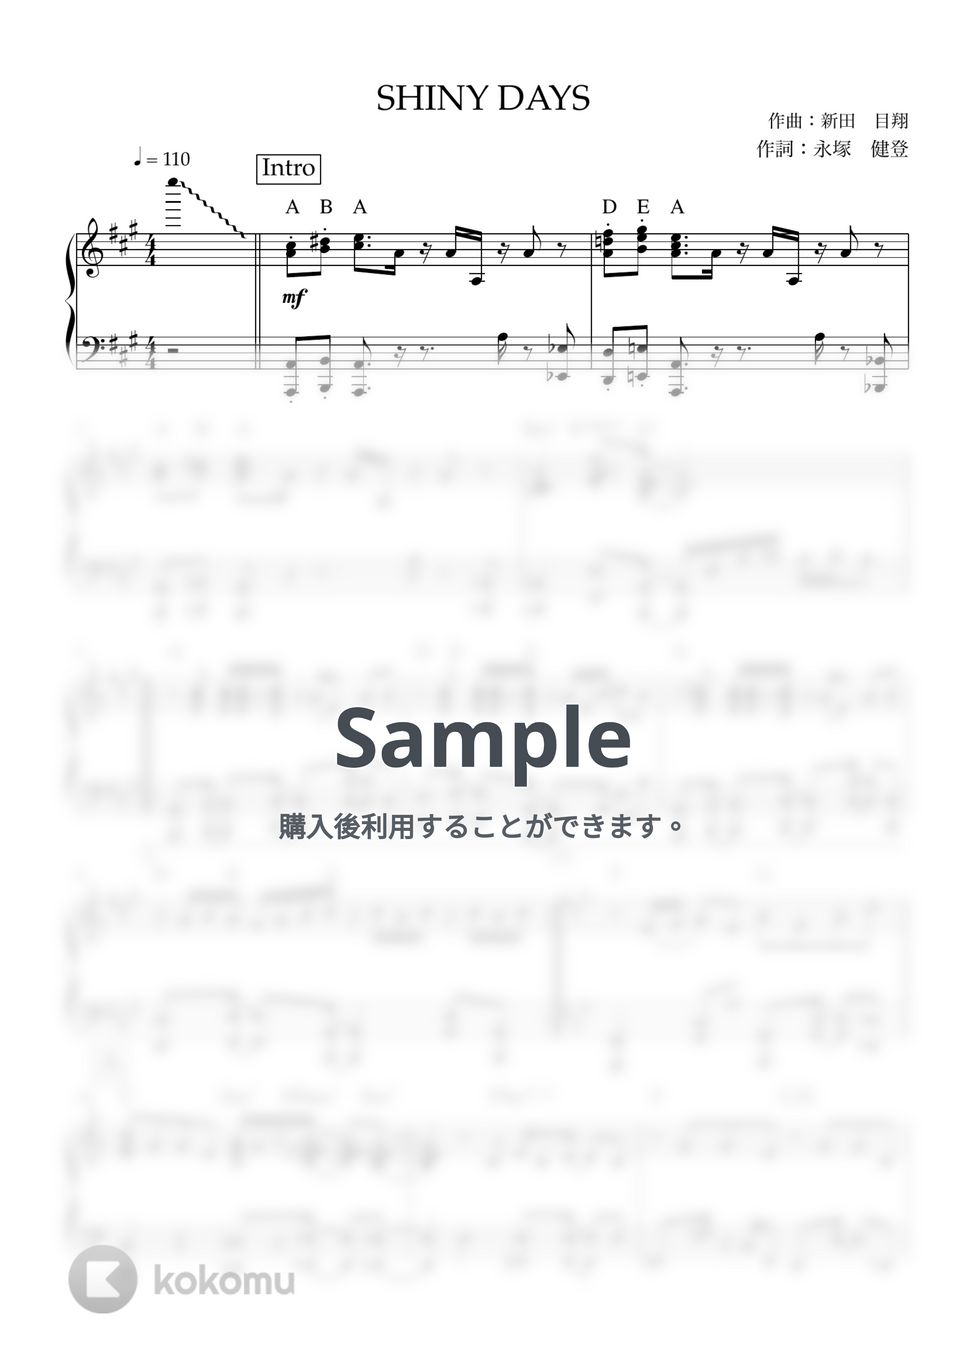 ゆるキャン△ - SHINY DAYS (ソロピアノ / 上級) by ヒット